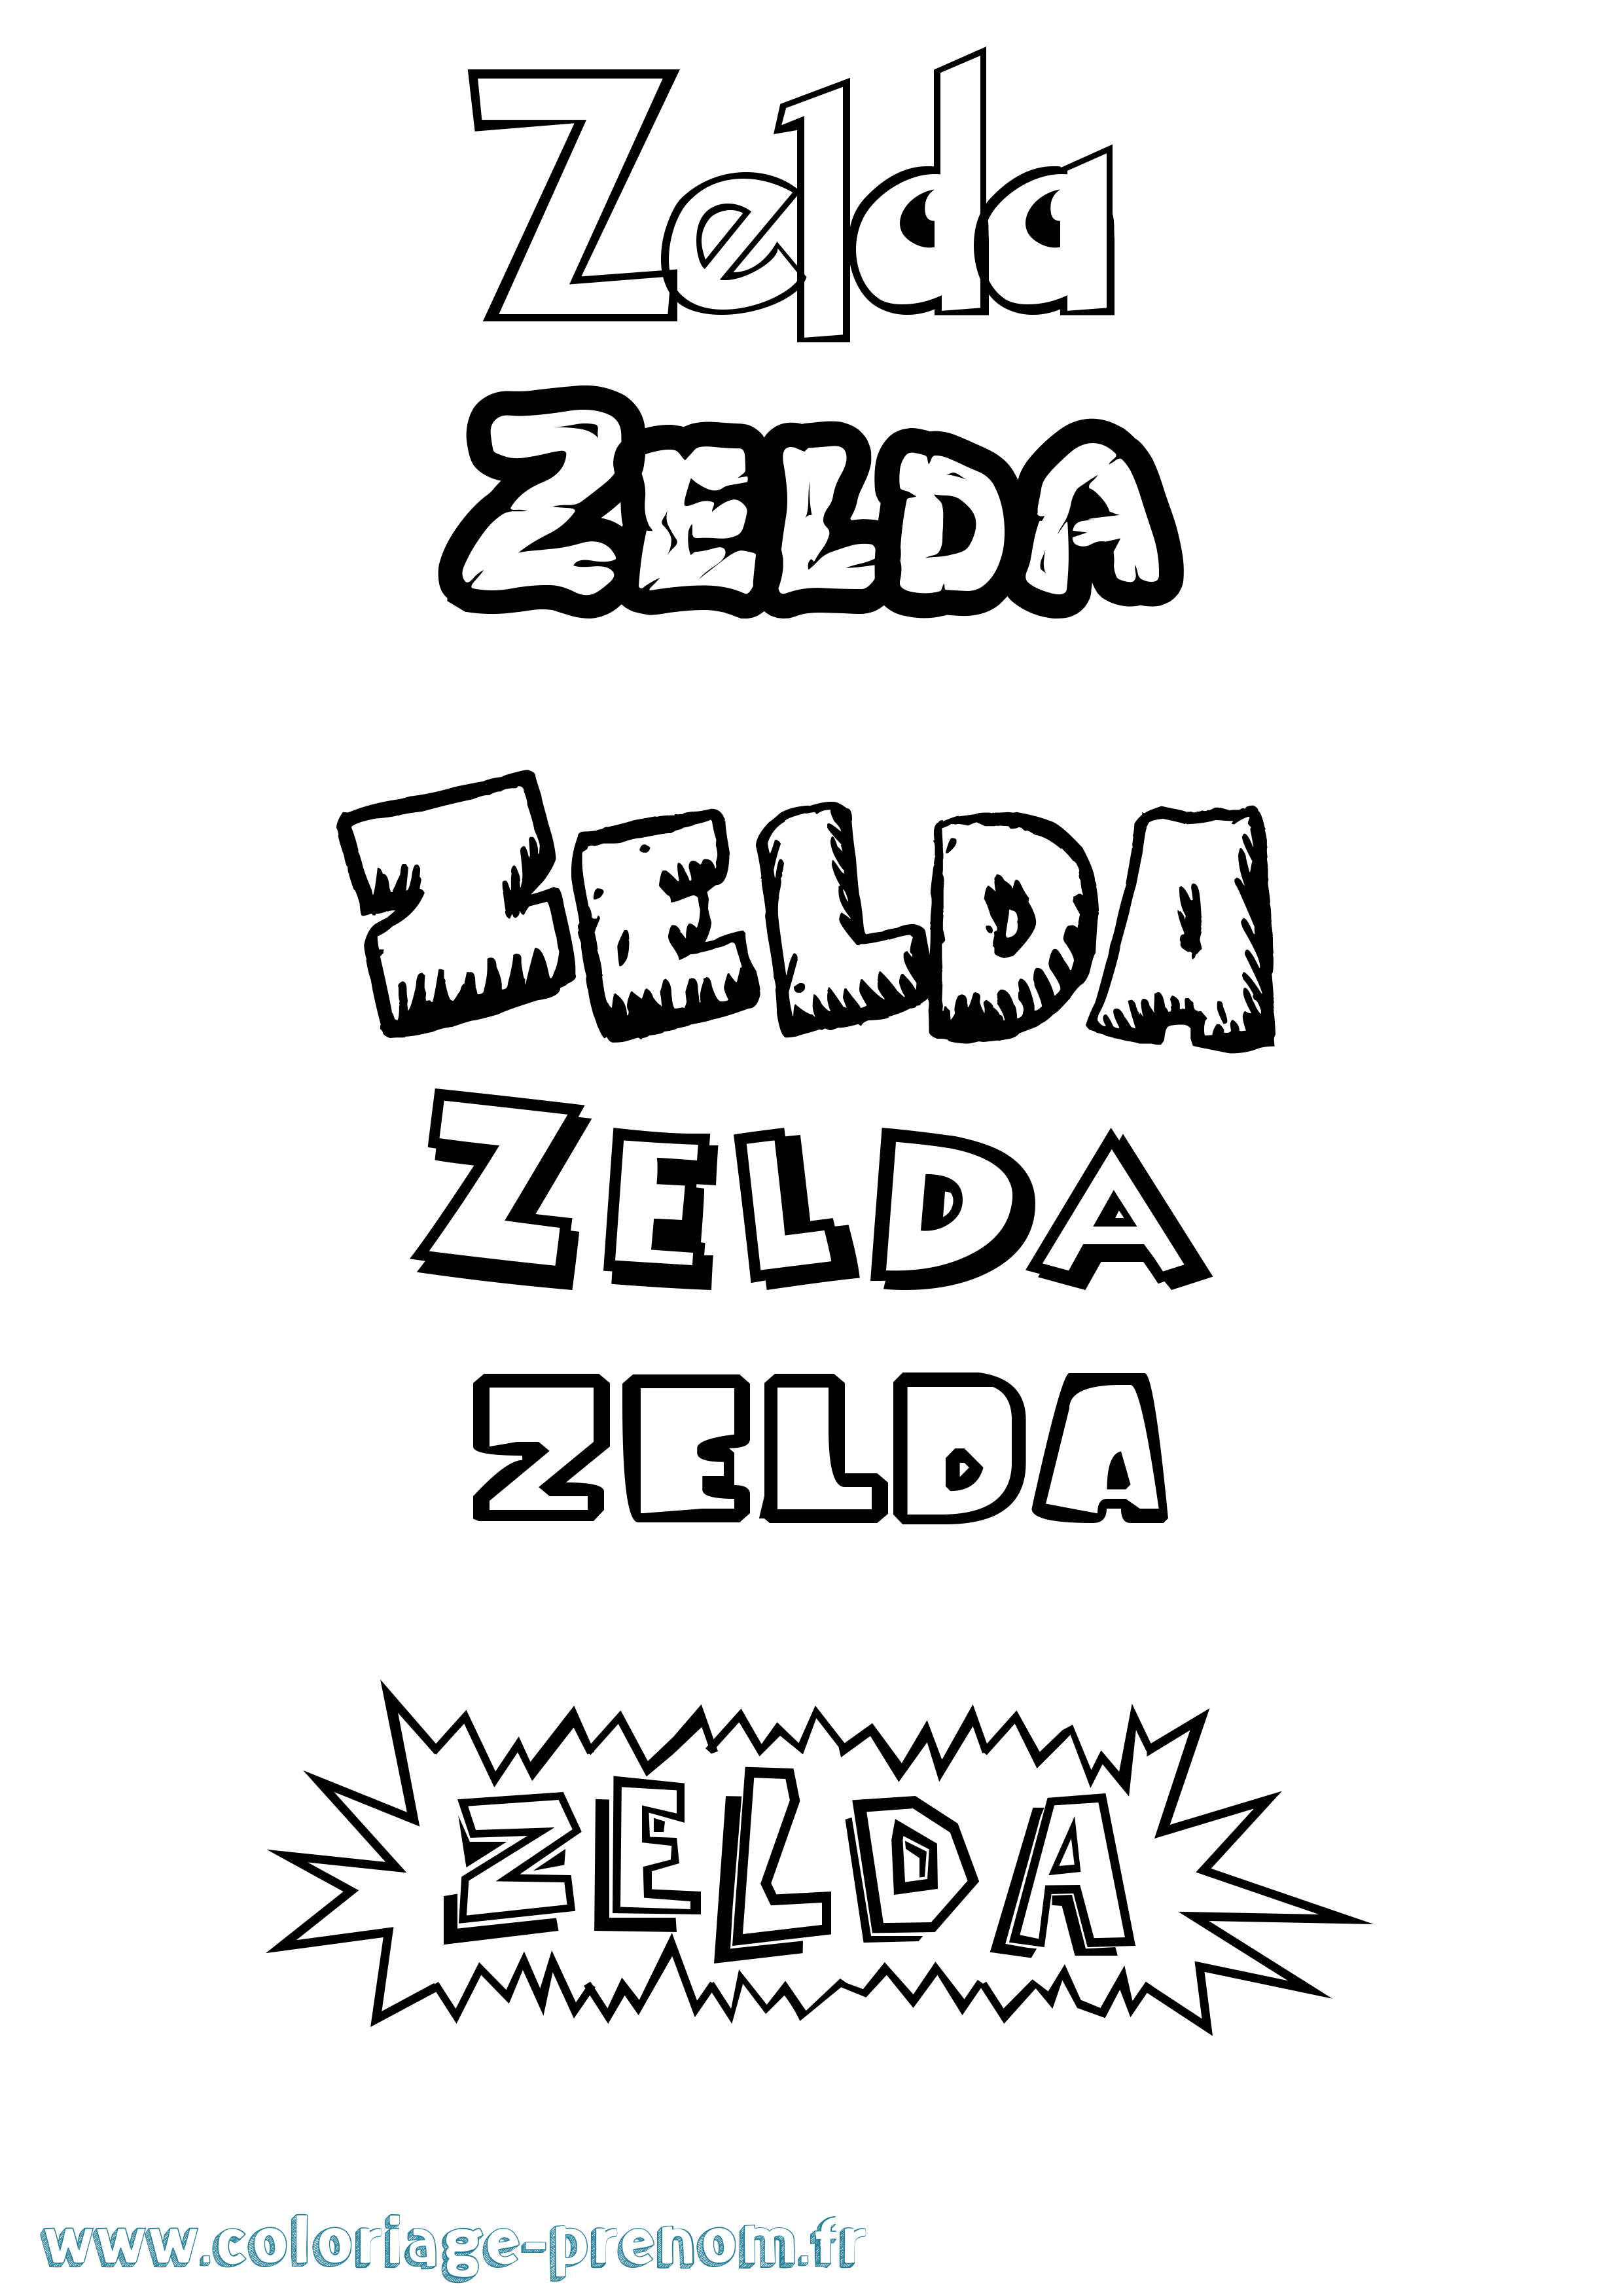 Coloriage prénom Zelda